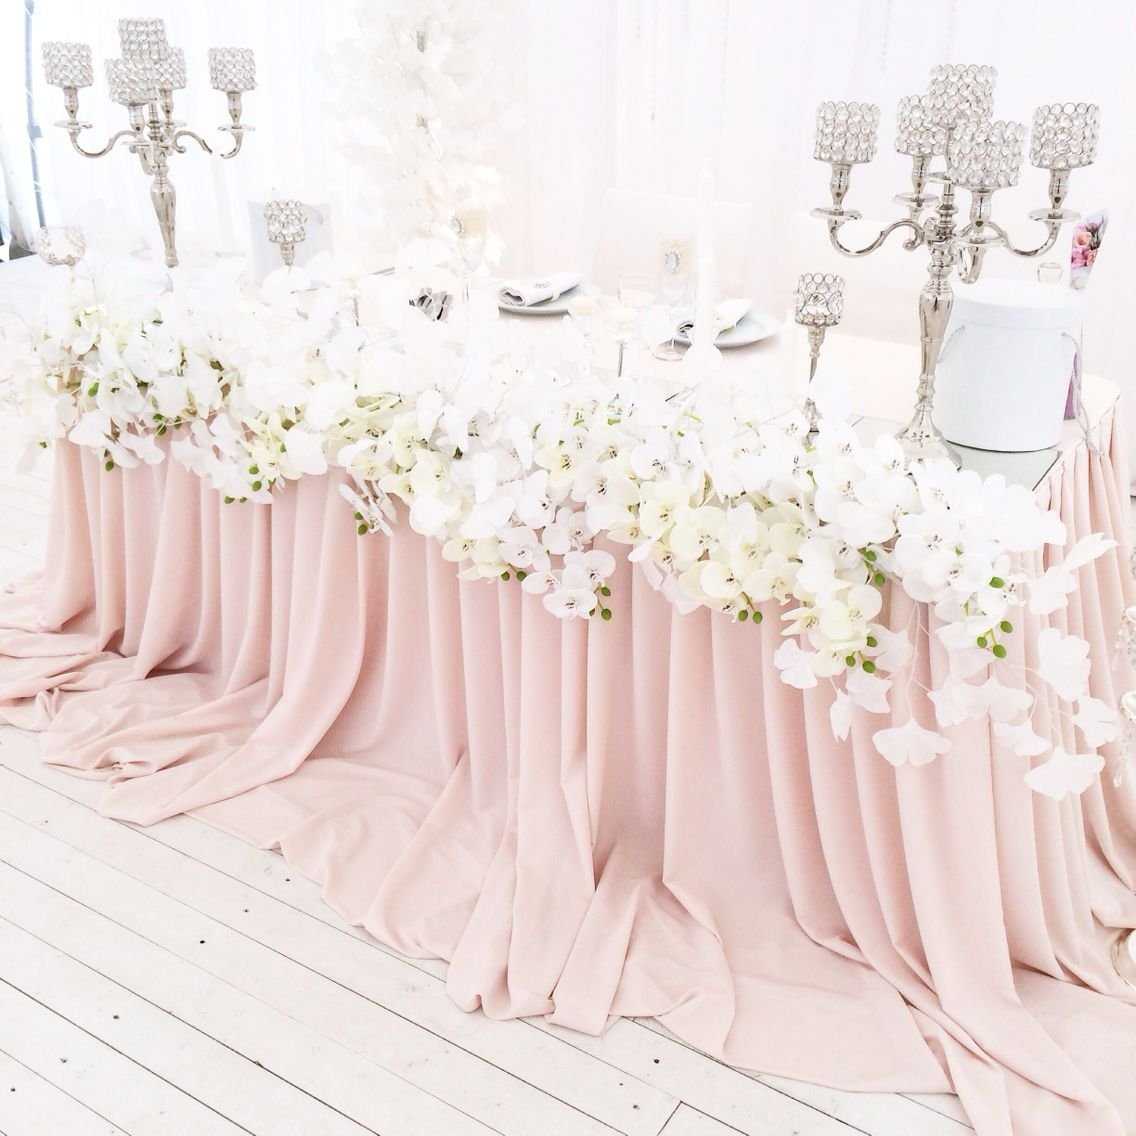 оформление зала на розовую свадьбу